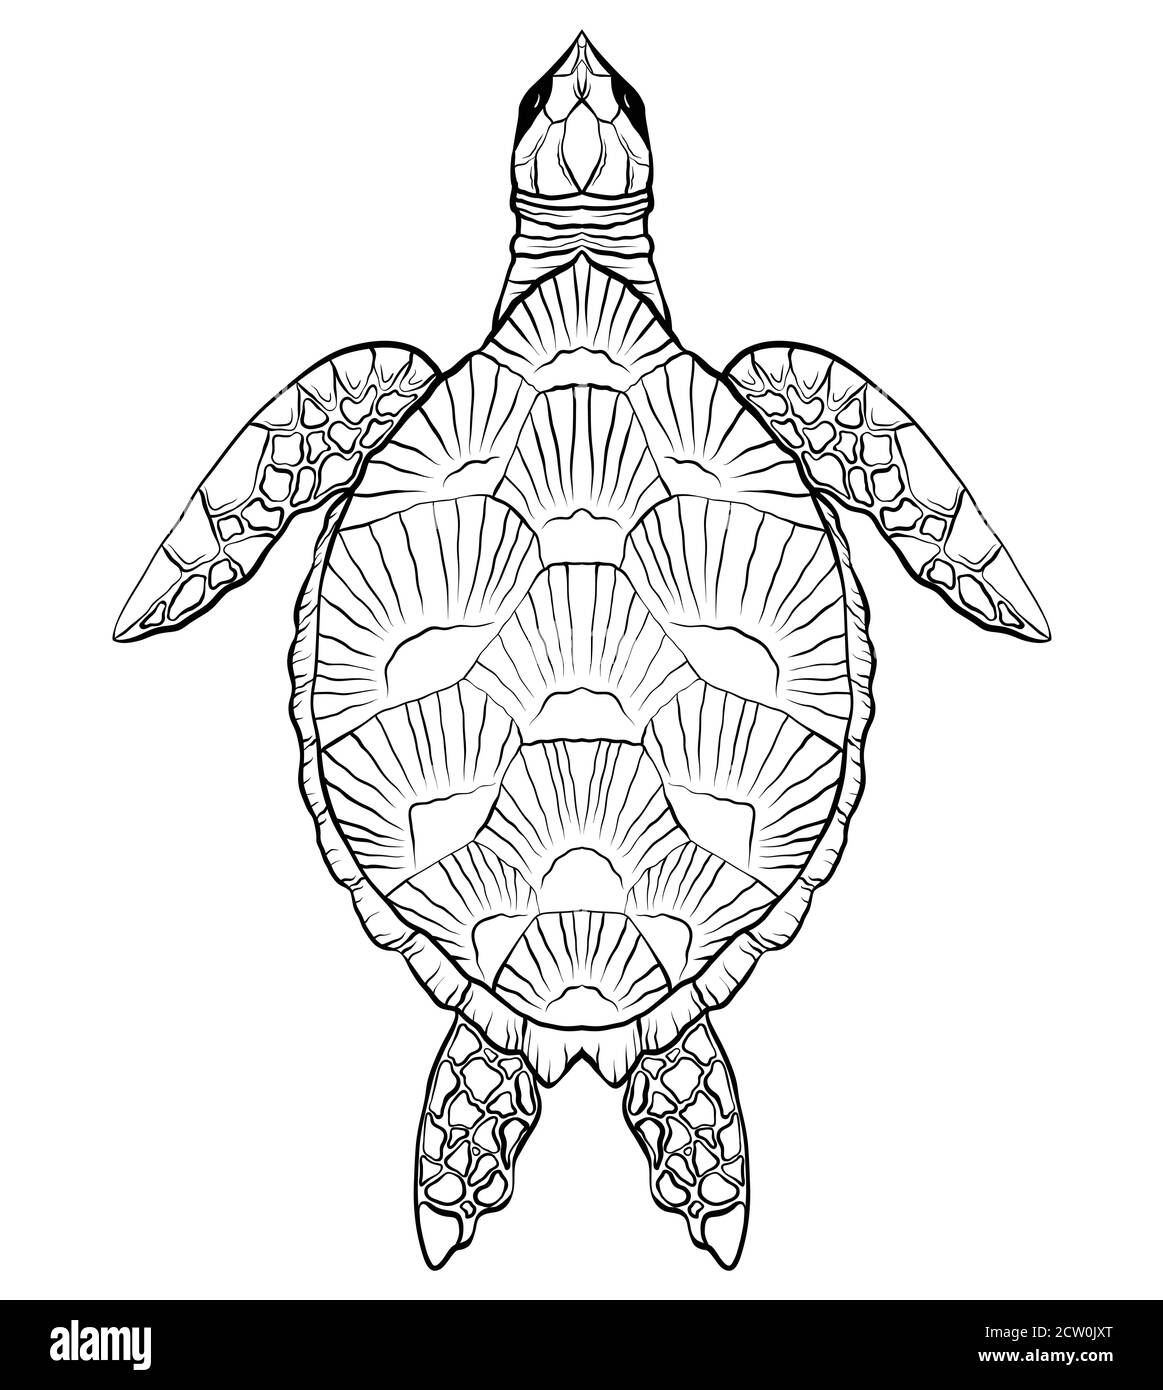 Contour noir et blanc illustration de la tortue. L'objet est séparé de l'arrière-plan. Illustration linéaire pour l'impression sur T-shirts, couvertures, sket Illustration de Vecteur